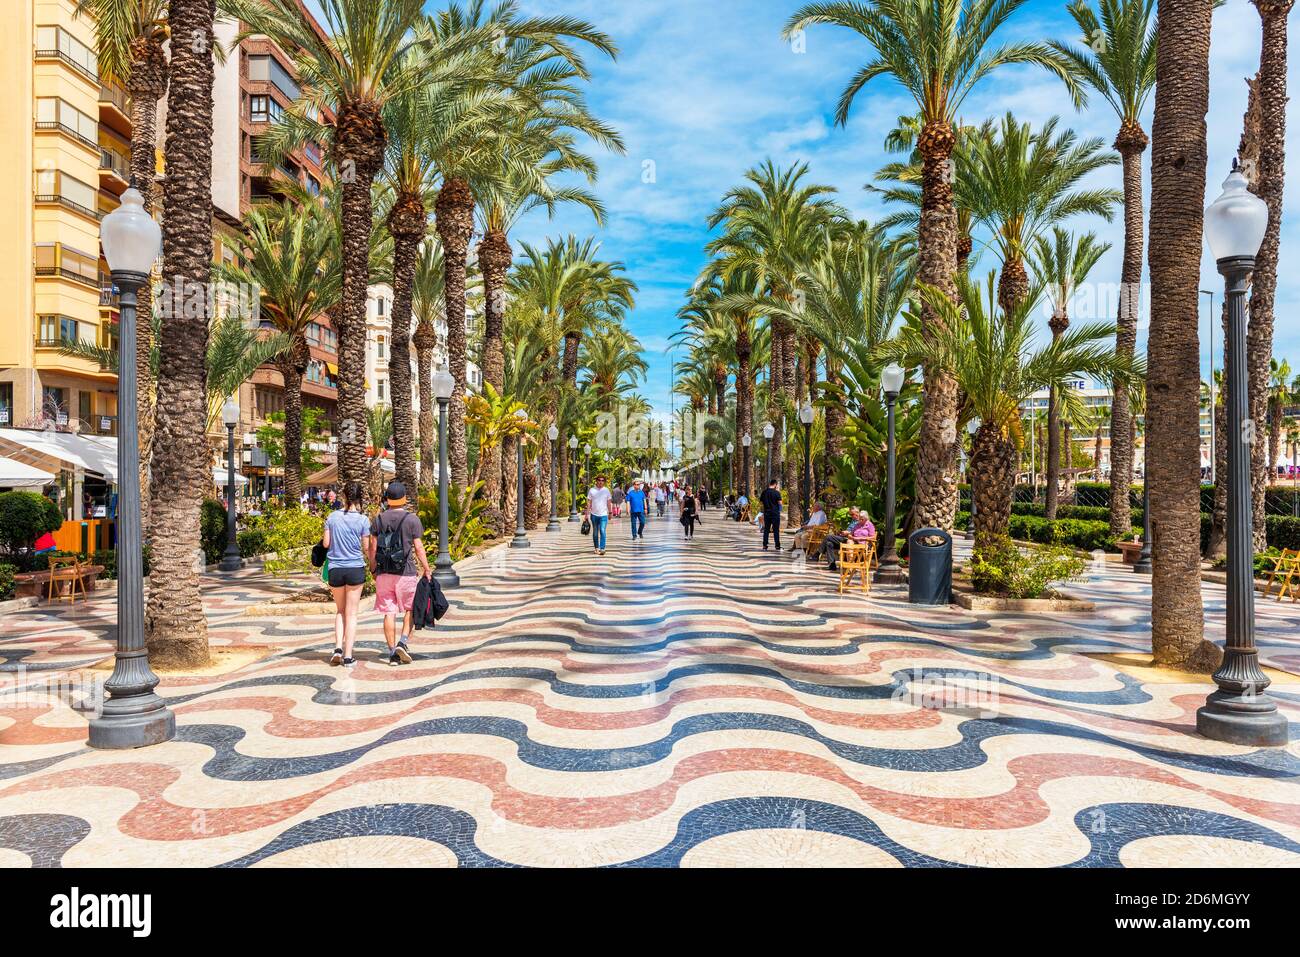 Menschen, die auf einer palmengesäumten Promenade in Alicante, Spanien, spazieren gehen. Alicante ist eine Stadt im Südosten der Iberischen Halbinsel. Stockfoto